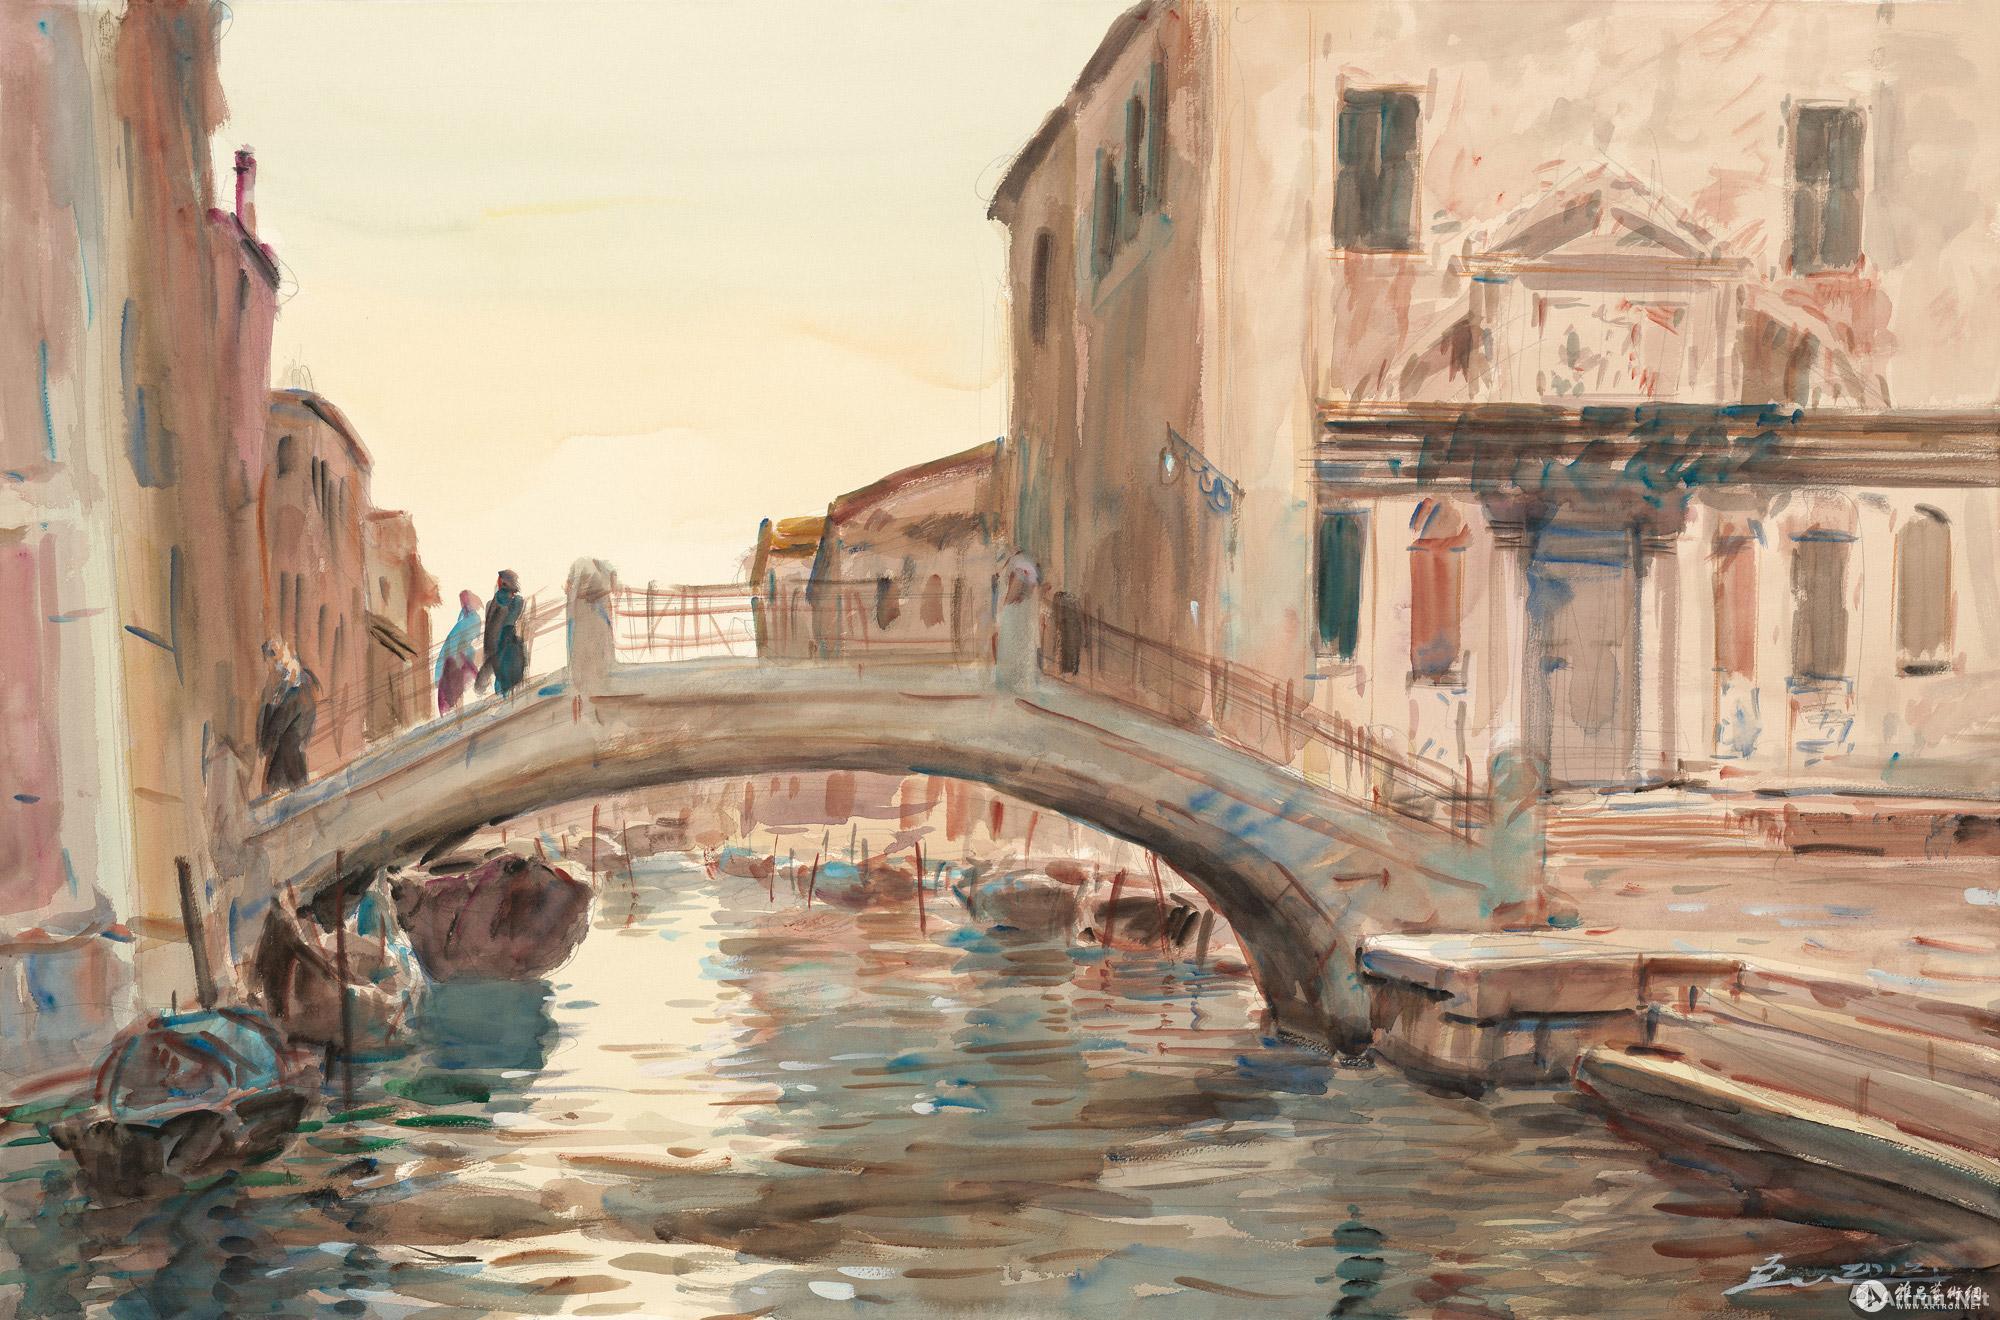 威尼斯印象No.1 No.1 of the Impressions of Venice